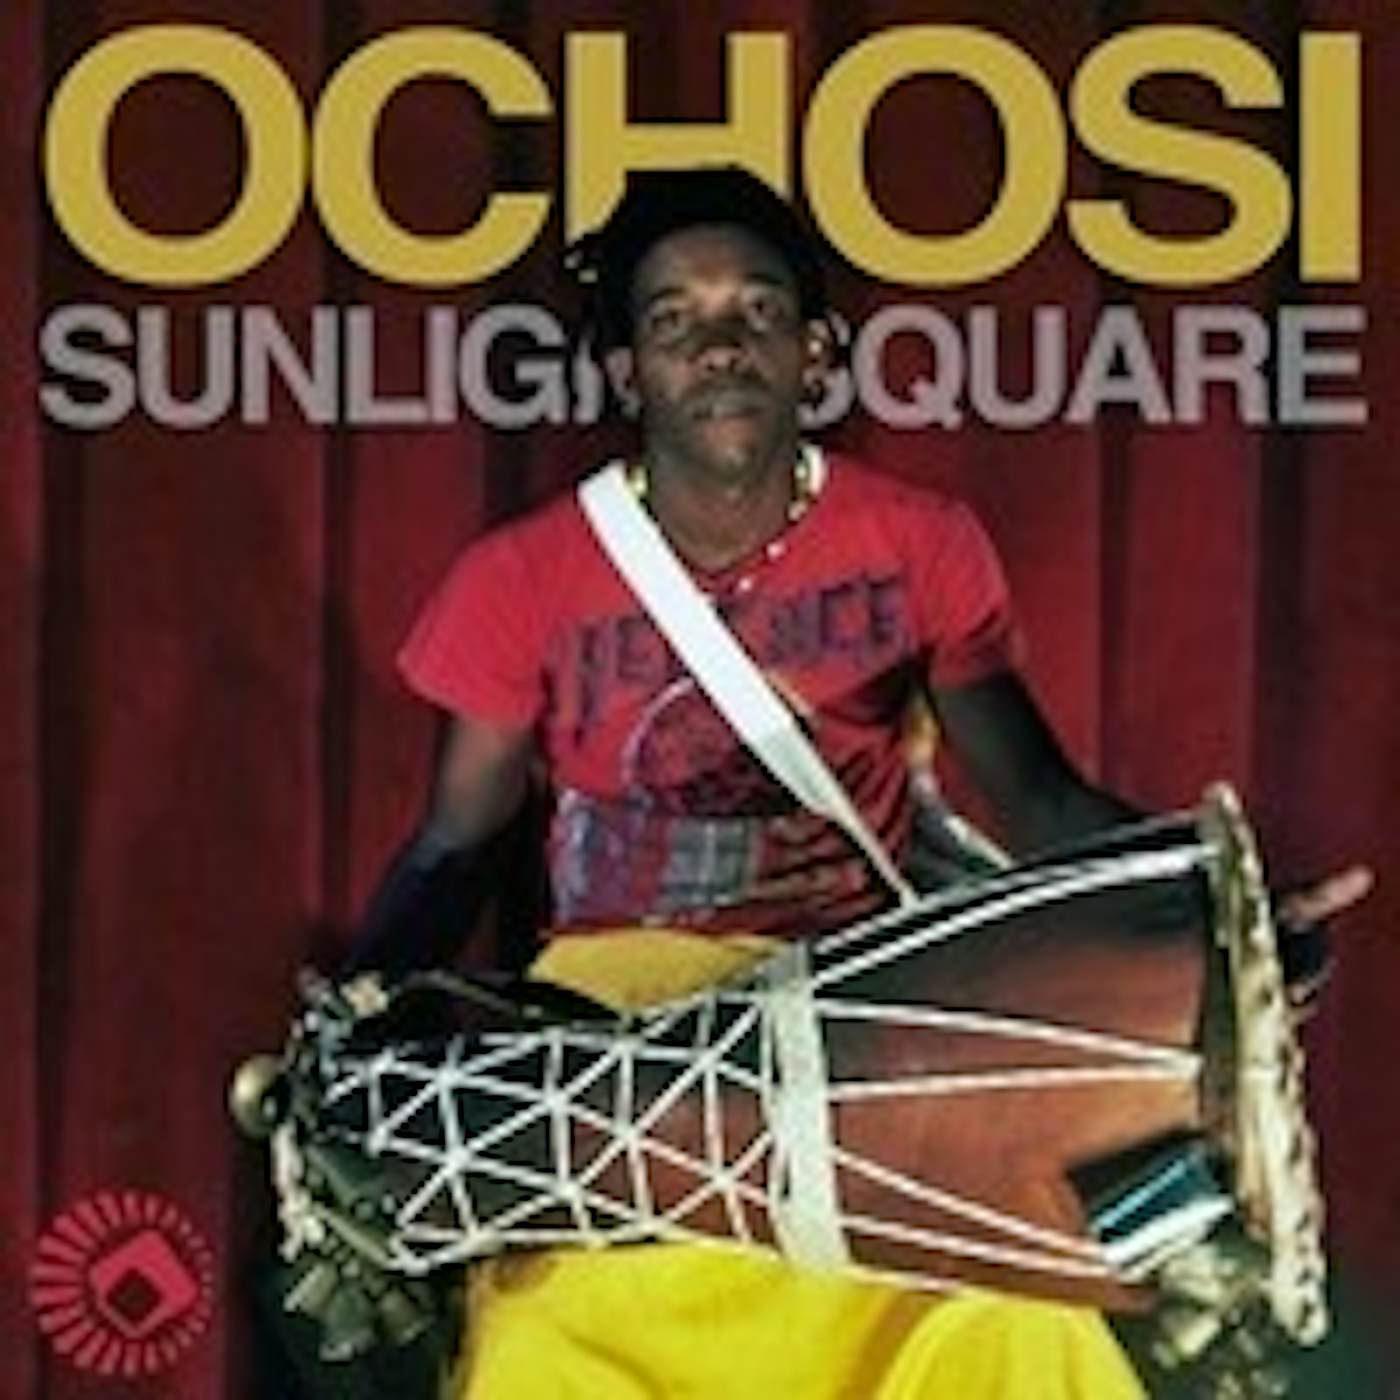 Sunlightsquare Ochosi Vinyl Record